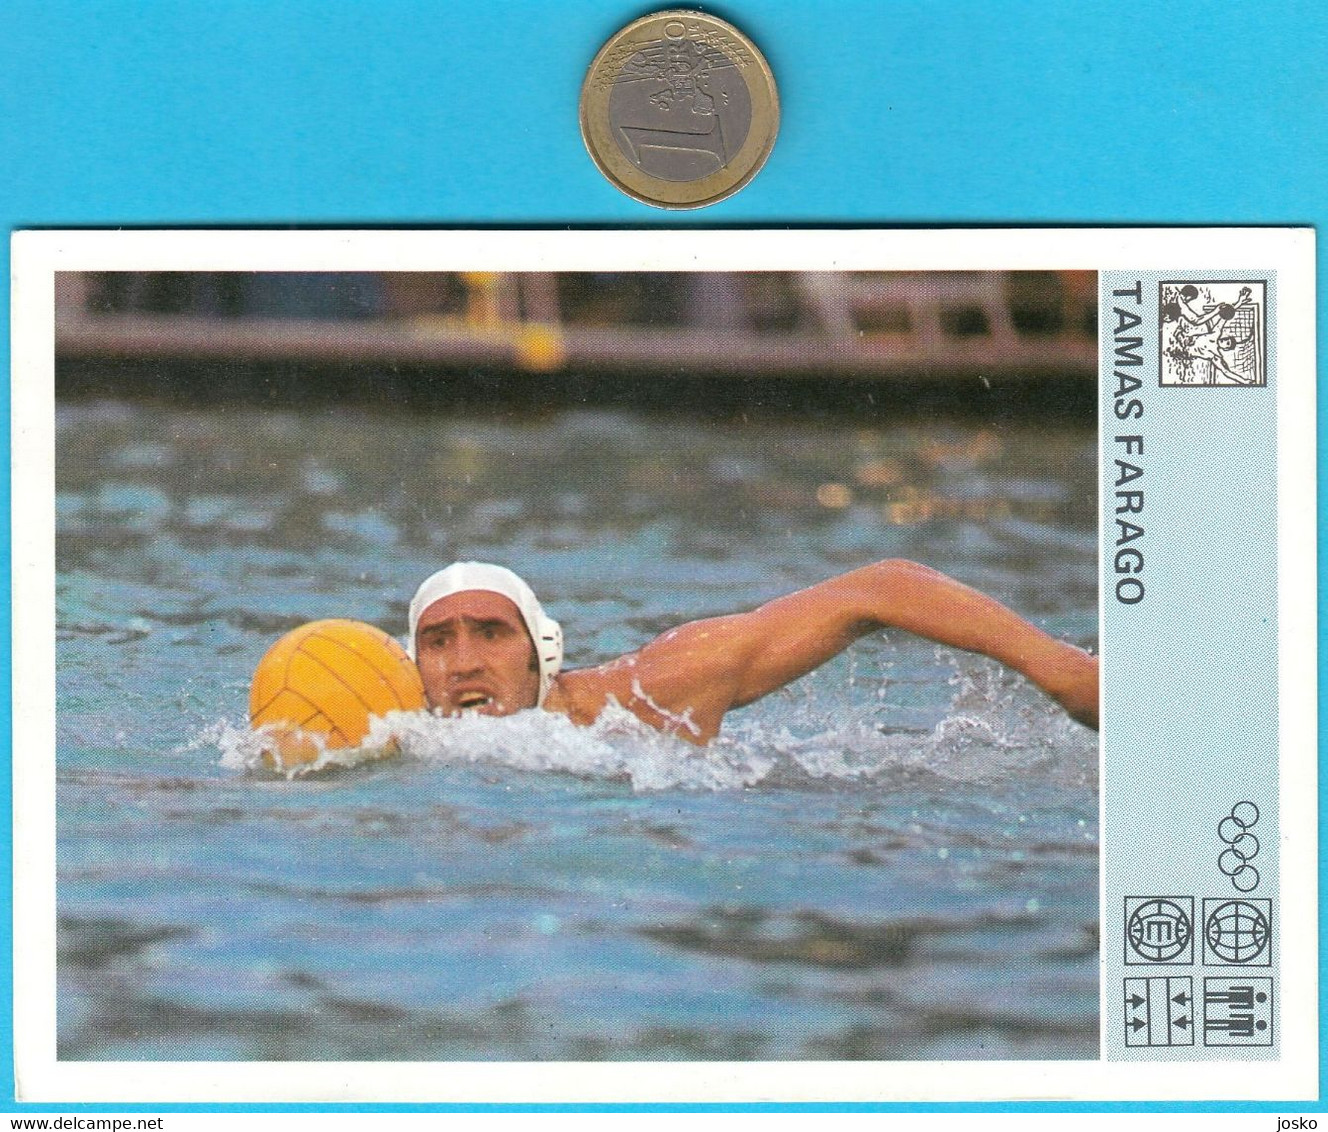 TAMAS FARAGO (water Polo) Yugoslavia Trading Card Svijet Sporta 1980 * Wasserball Polo Acuático Pallanuoto Hungary - Natation